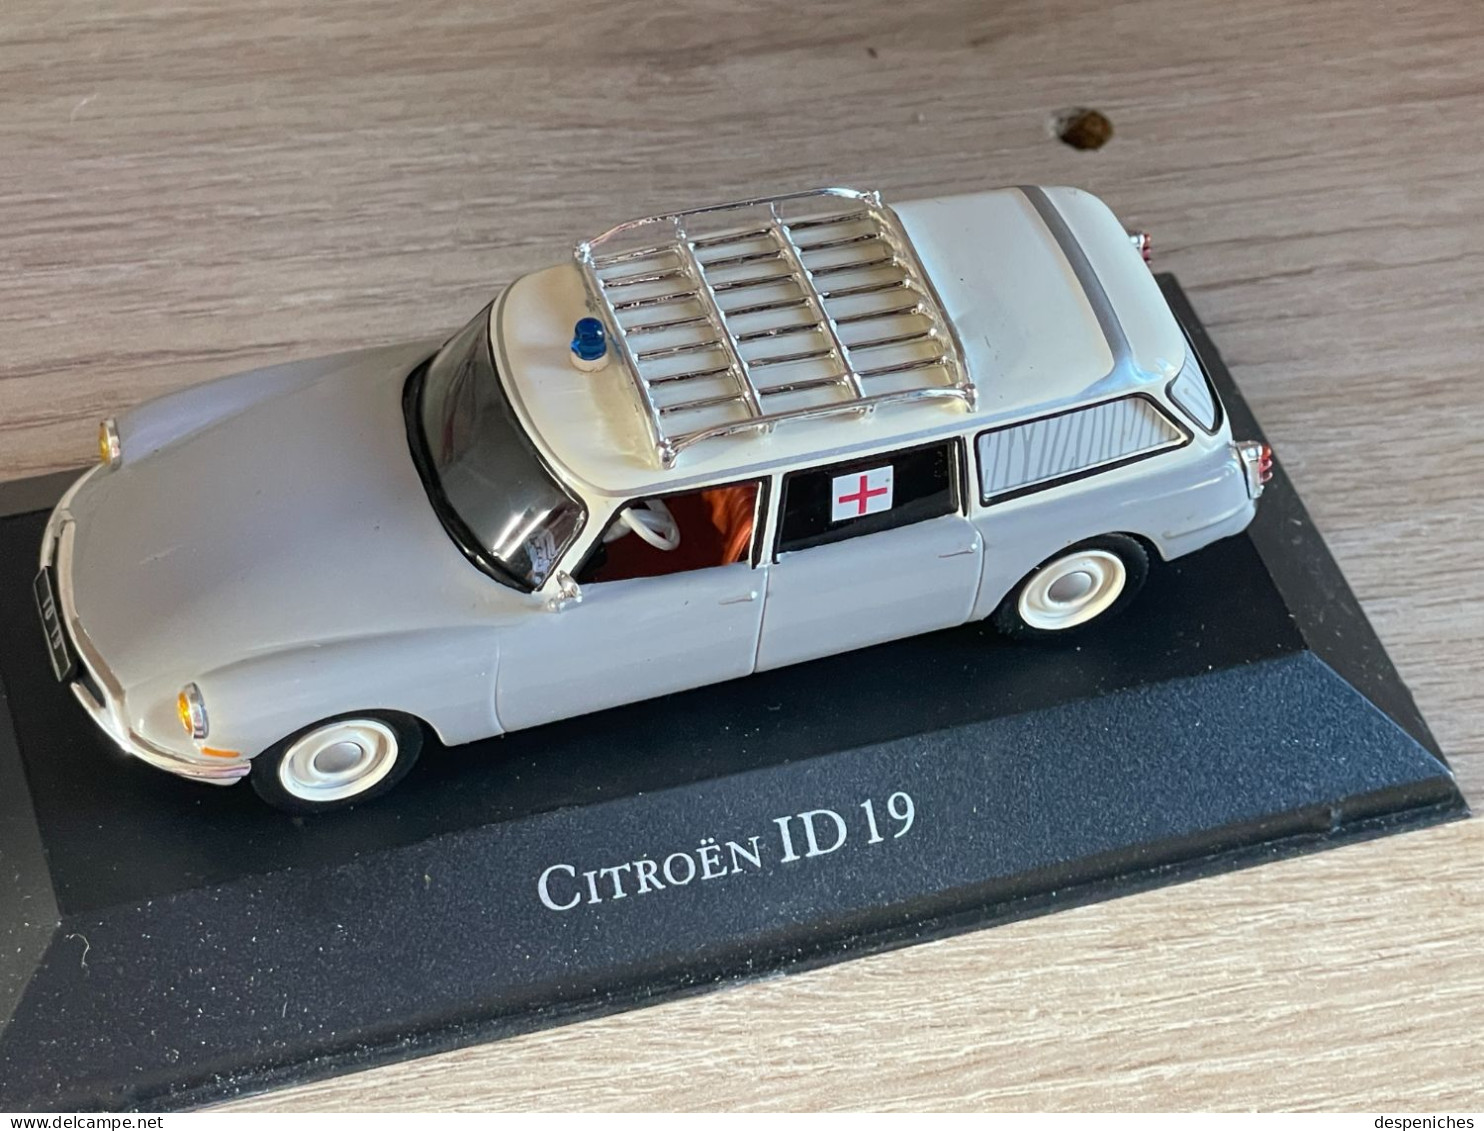 Atlas Citroën ID 19 Ambulance neuve dans sa Boîte échelle 1/43e